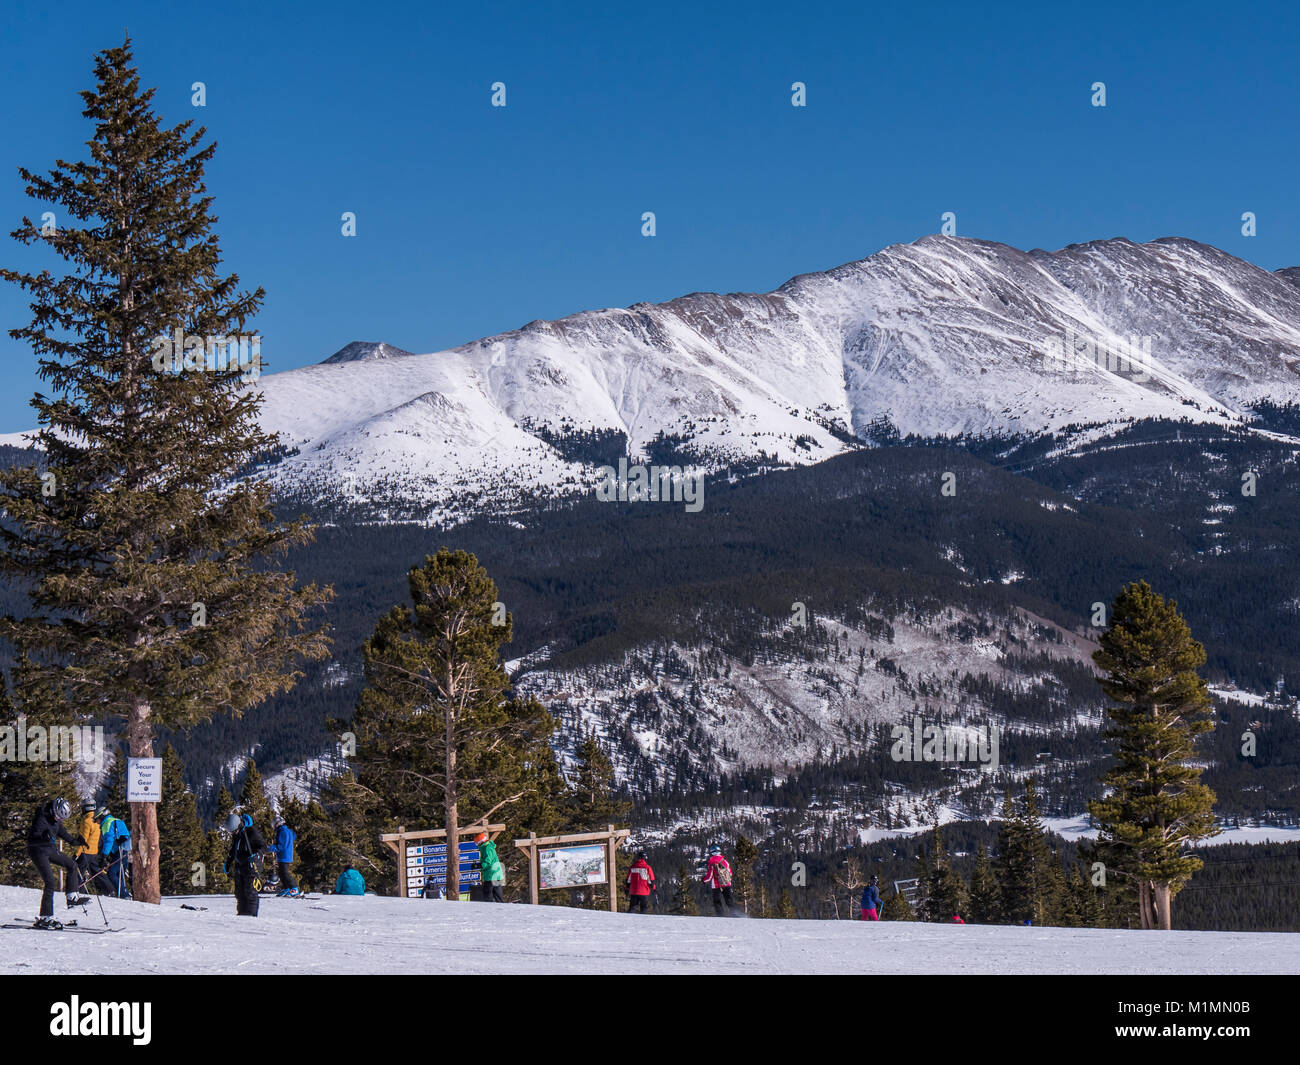 Blick vom Tag übersehen Lodge und Restaurant auf der Spitze Spitze 9, Breckenridge Ski Resort, Breckenridge, Colorado. Stockfoto